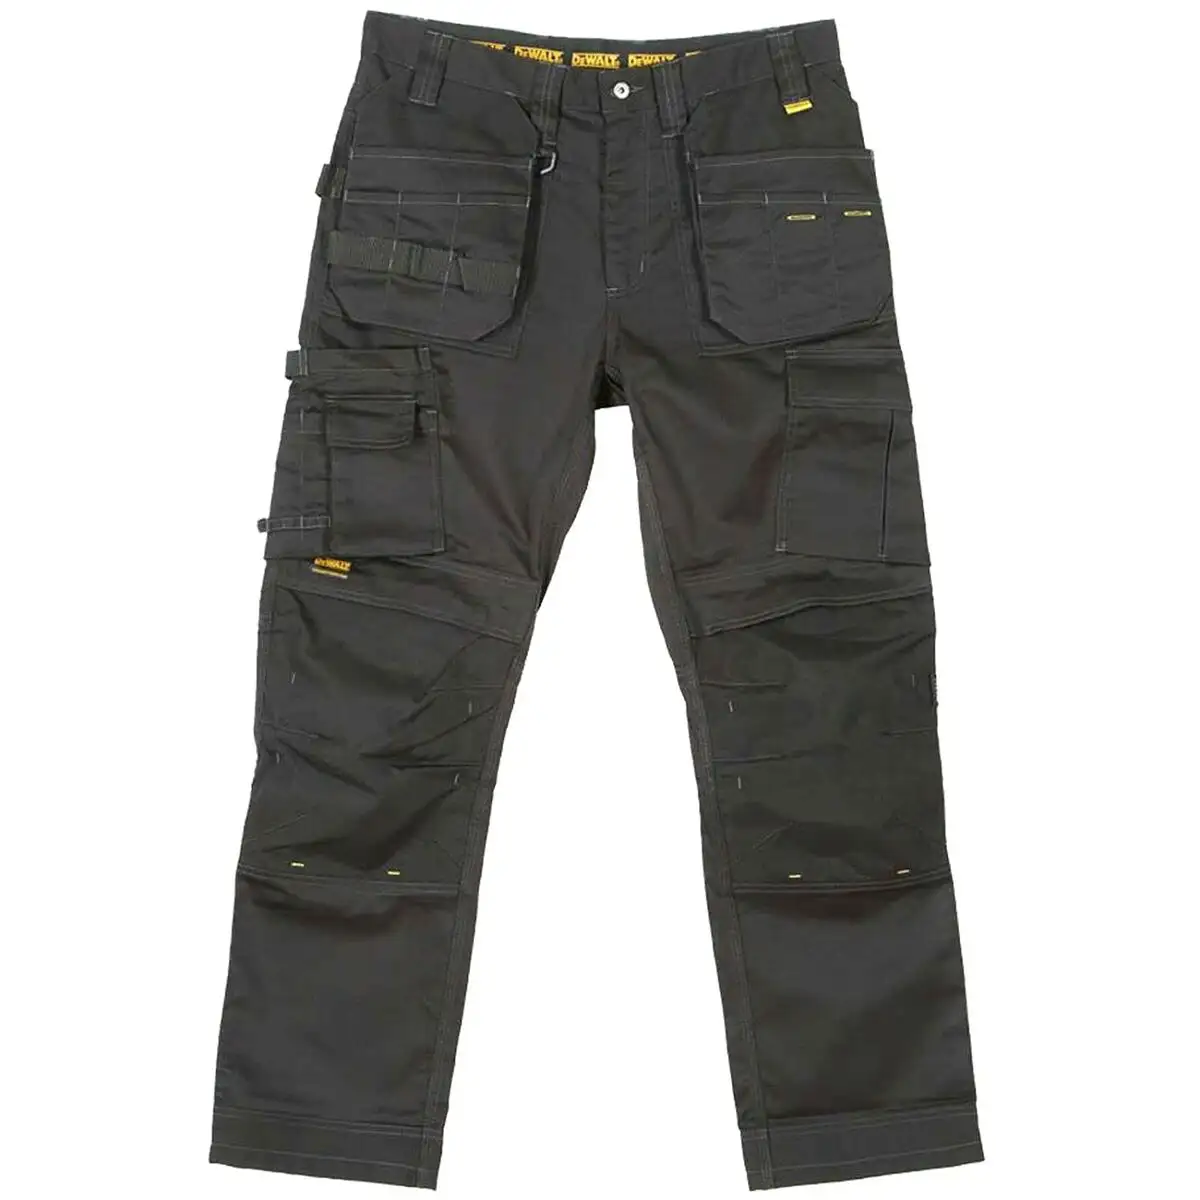 Pantalons de securite dewalt thurlston 40 gris_9737. DIAYTAR SENEGAL - L'Art de Trouver ce que Vous Aimez. Plongez dans notre assortiment varié et choisissez parmi des produits qui reflètent votre style et répondent à vos besoins.